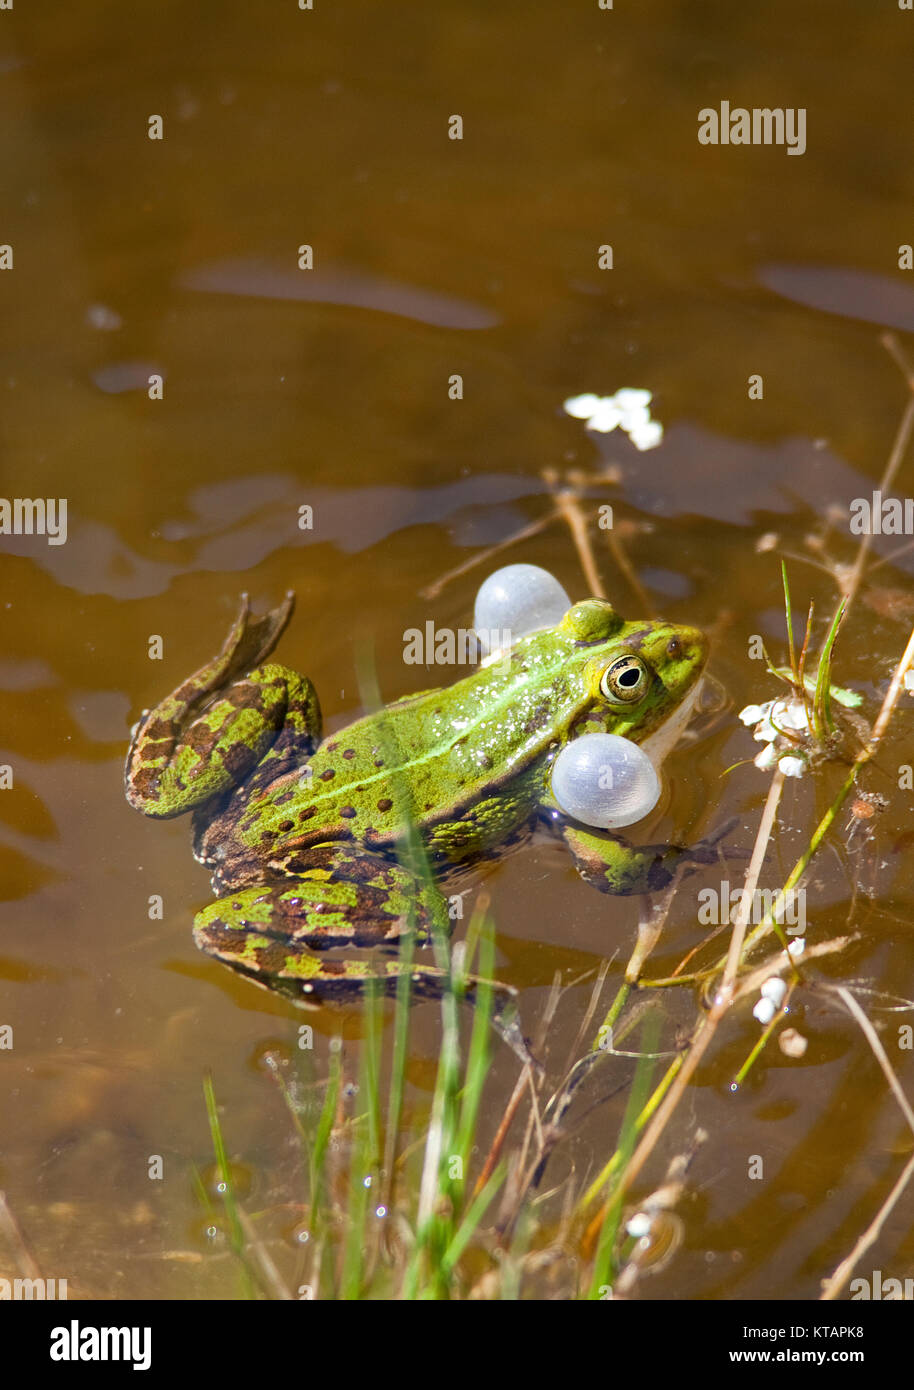 Wasserfrosch, gemeinsame Wasser Frosch (Rana kl. esculenta), auch genannt grünen Frosch, in einem Teich in Middelhagen, mönchgut, Insel Rügen, Ostsee, Deutschland Stockfoto